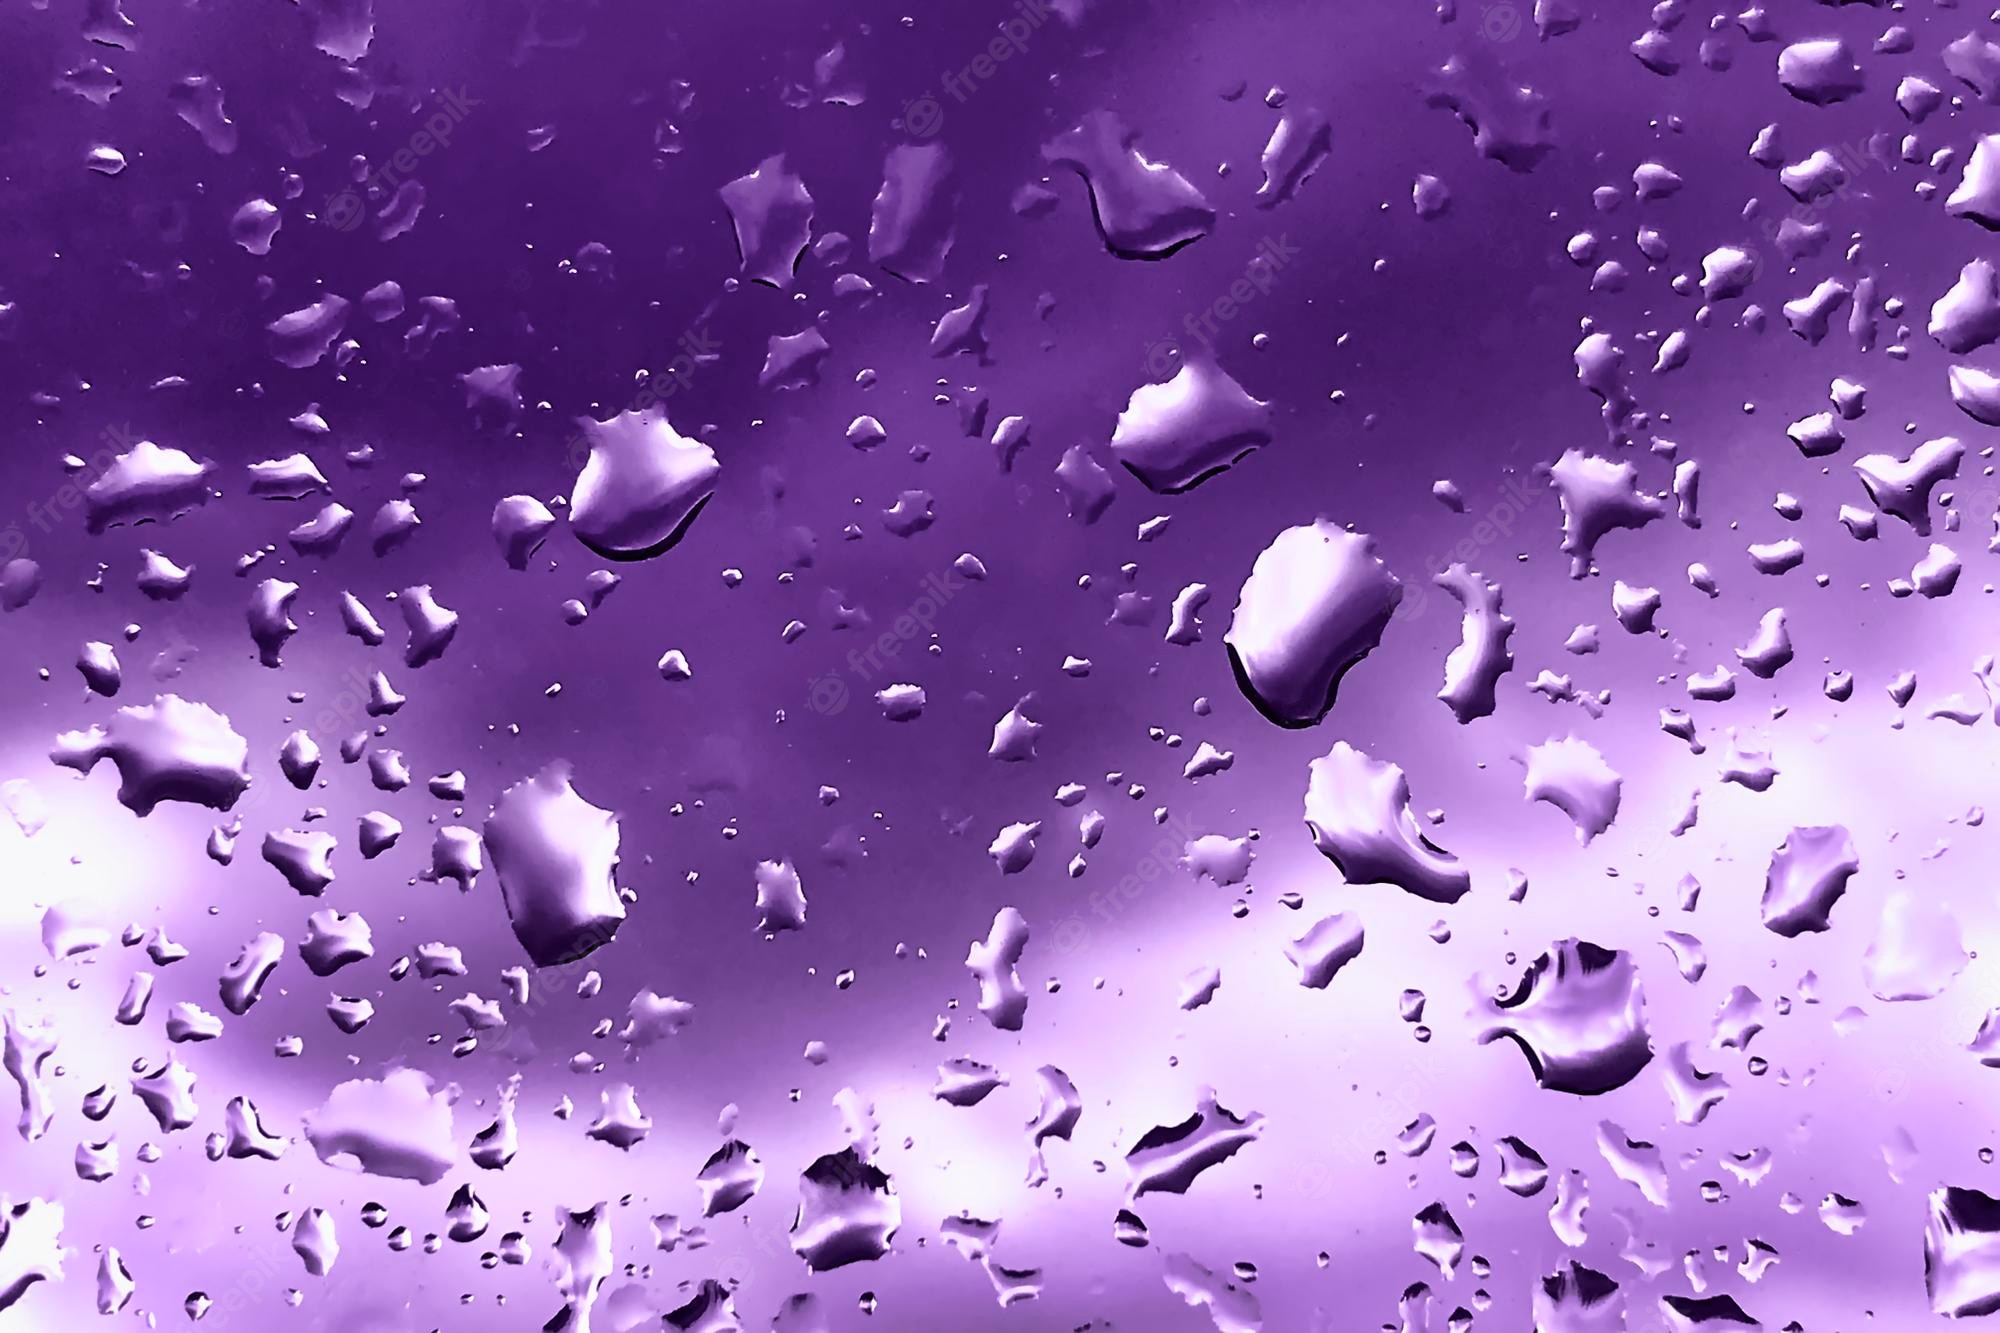 Violet Drops Image. Free Vectors, & PSD